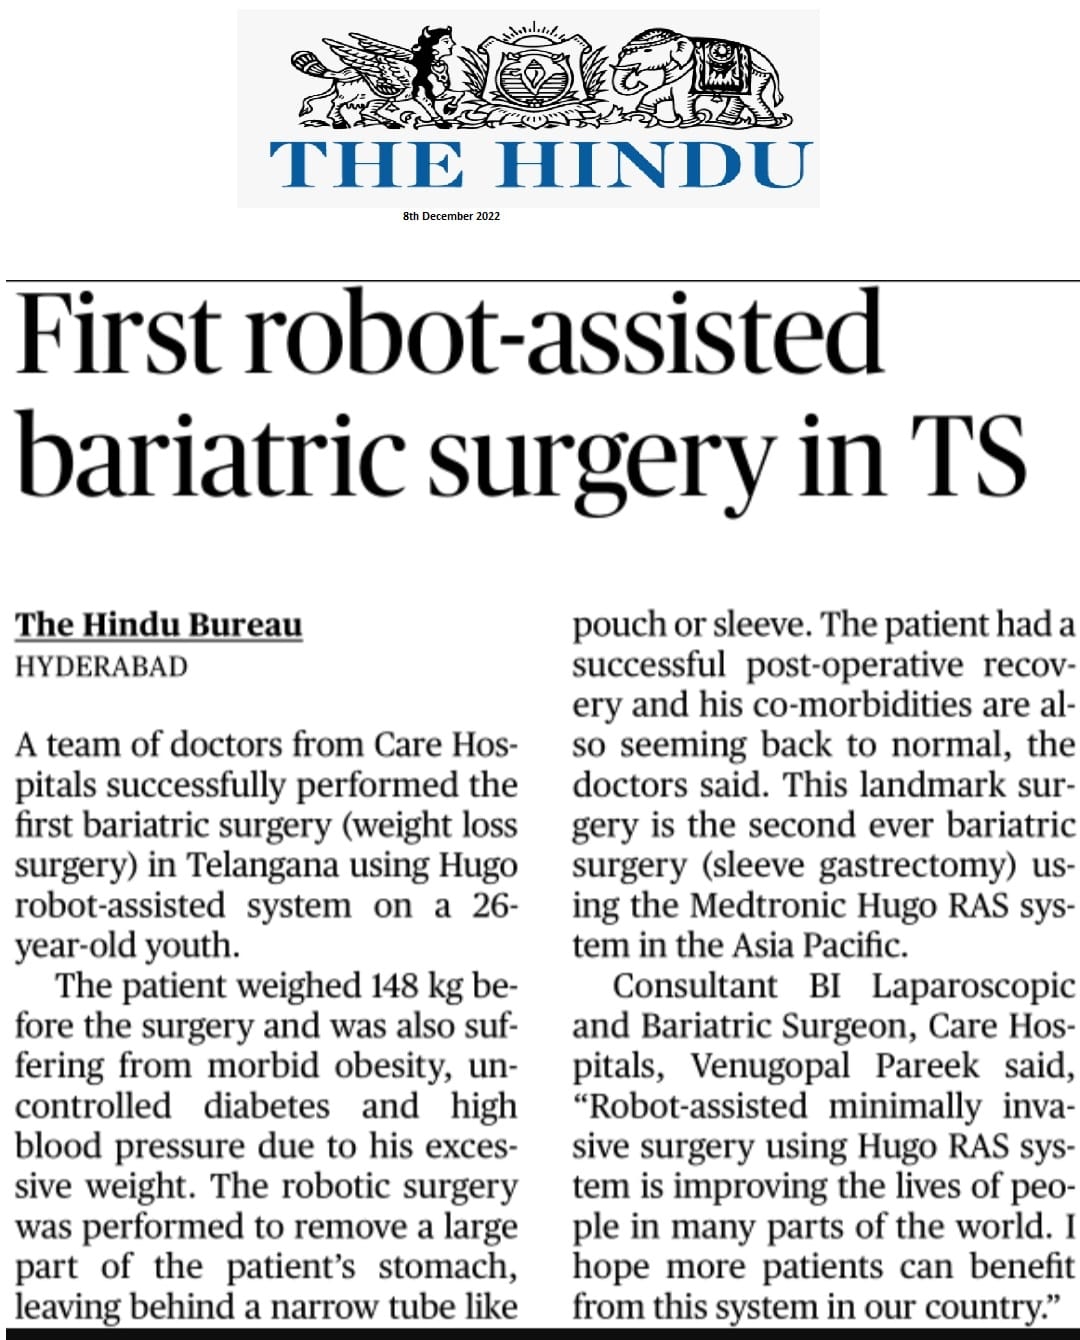 टीएस में पहली रोबोट-सहायक बेरिएट्रिक सर्जरी